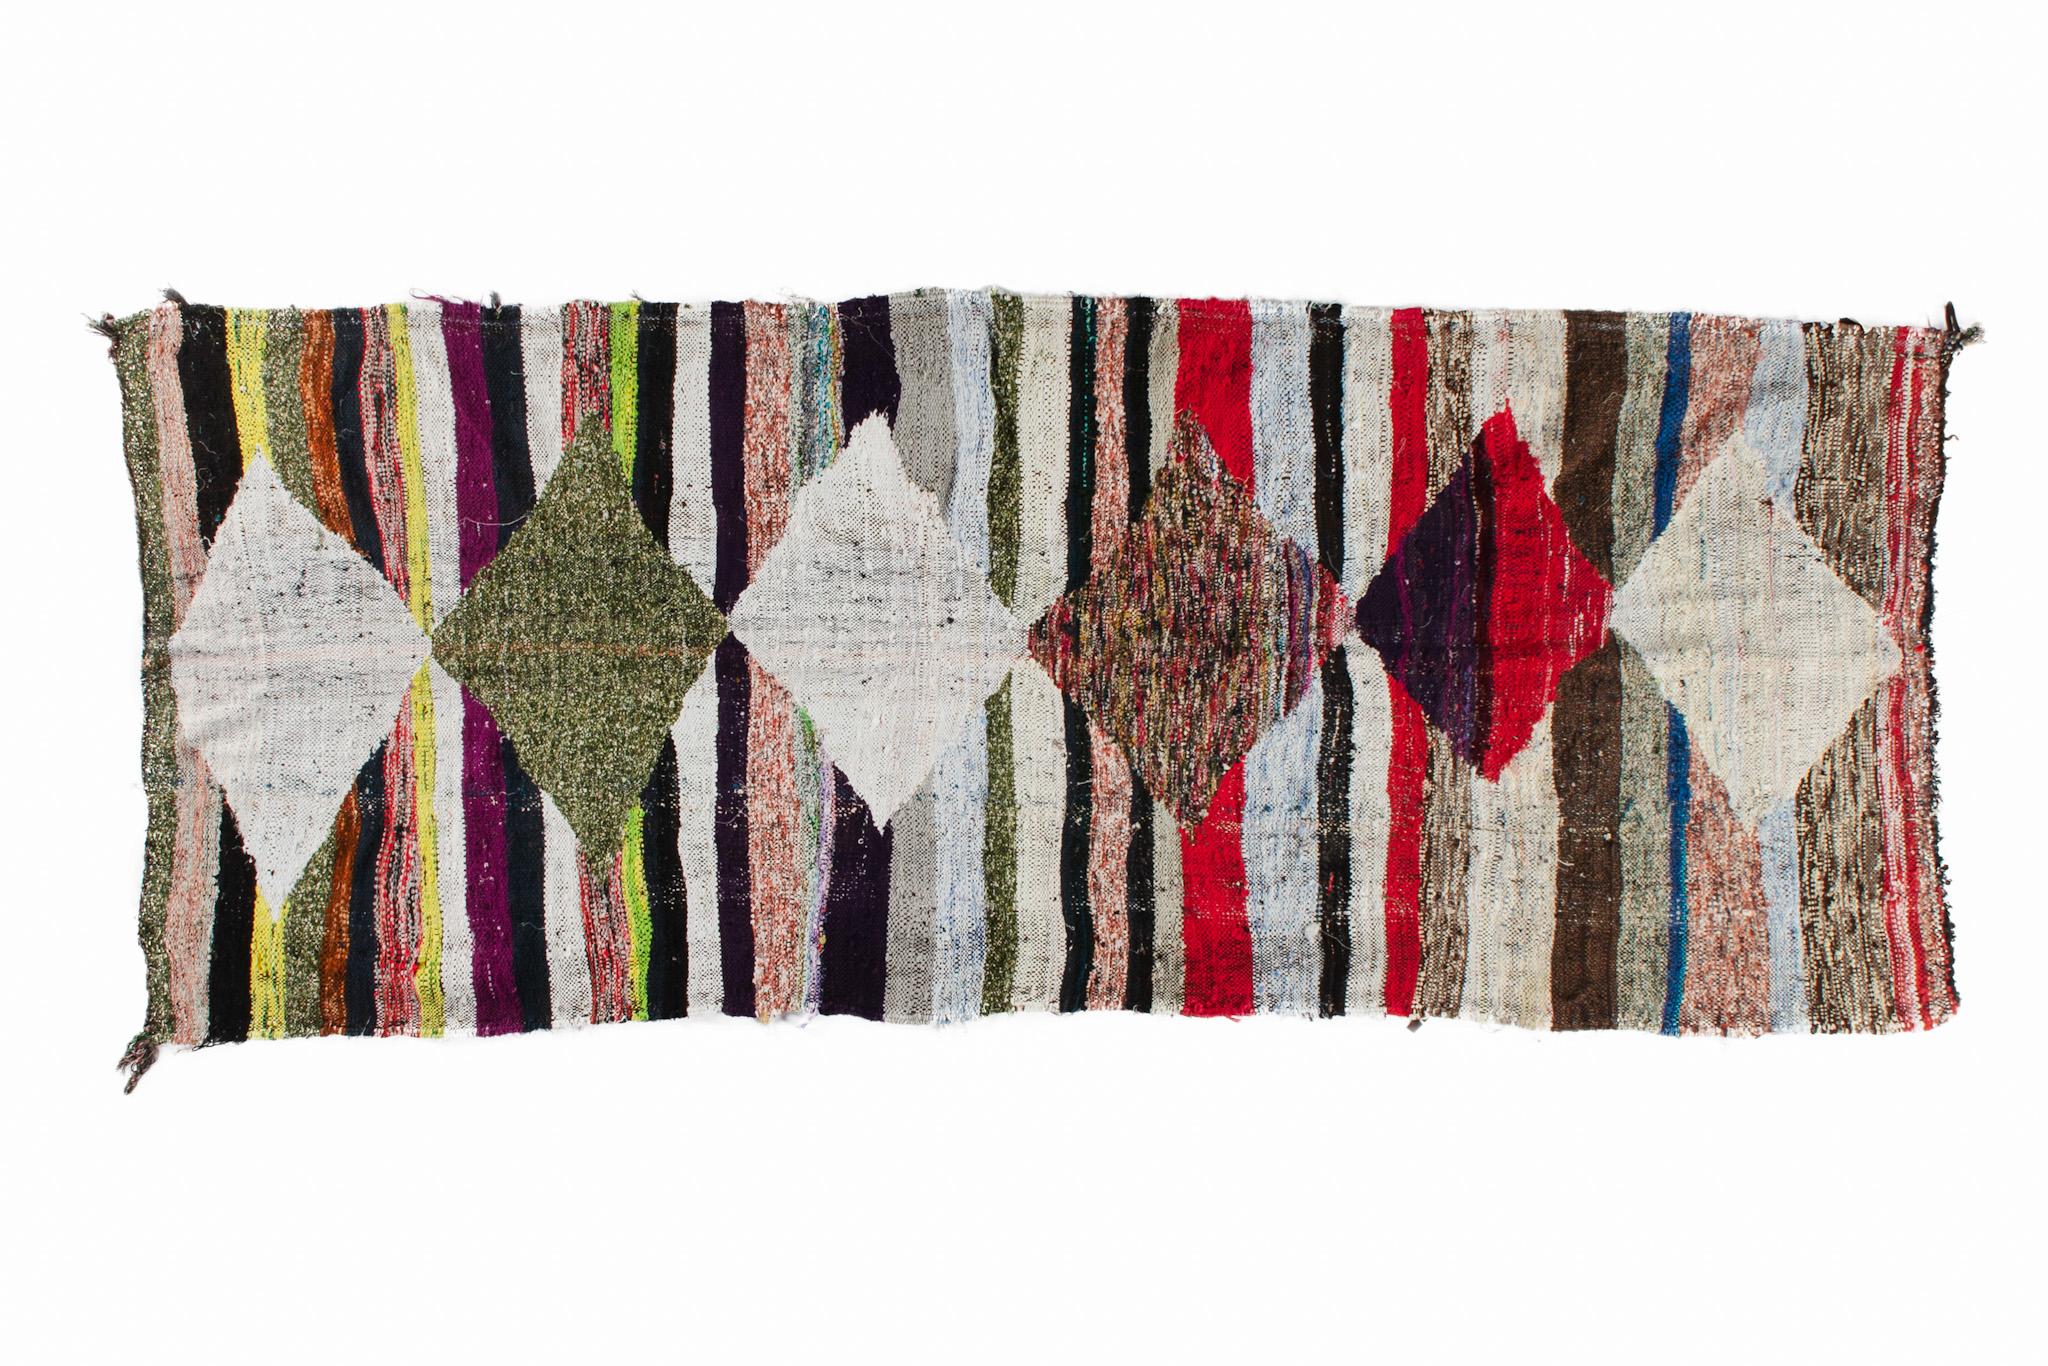 Les tapis boucharouites sont constitués de pièces de vêtements multicolores. C'est le tapis recyclé le plus authentique que vous ayez jamais vu ! Dimensions : 3.4'х8' / 249x104 cm.

La boucharouite est une ancienne technique manuelle qui consiste à